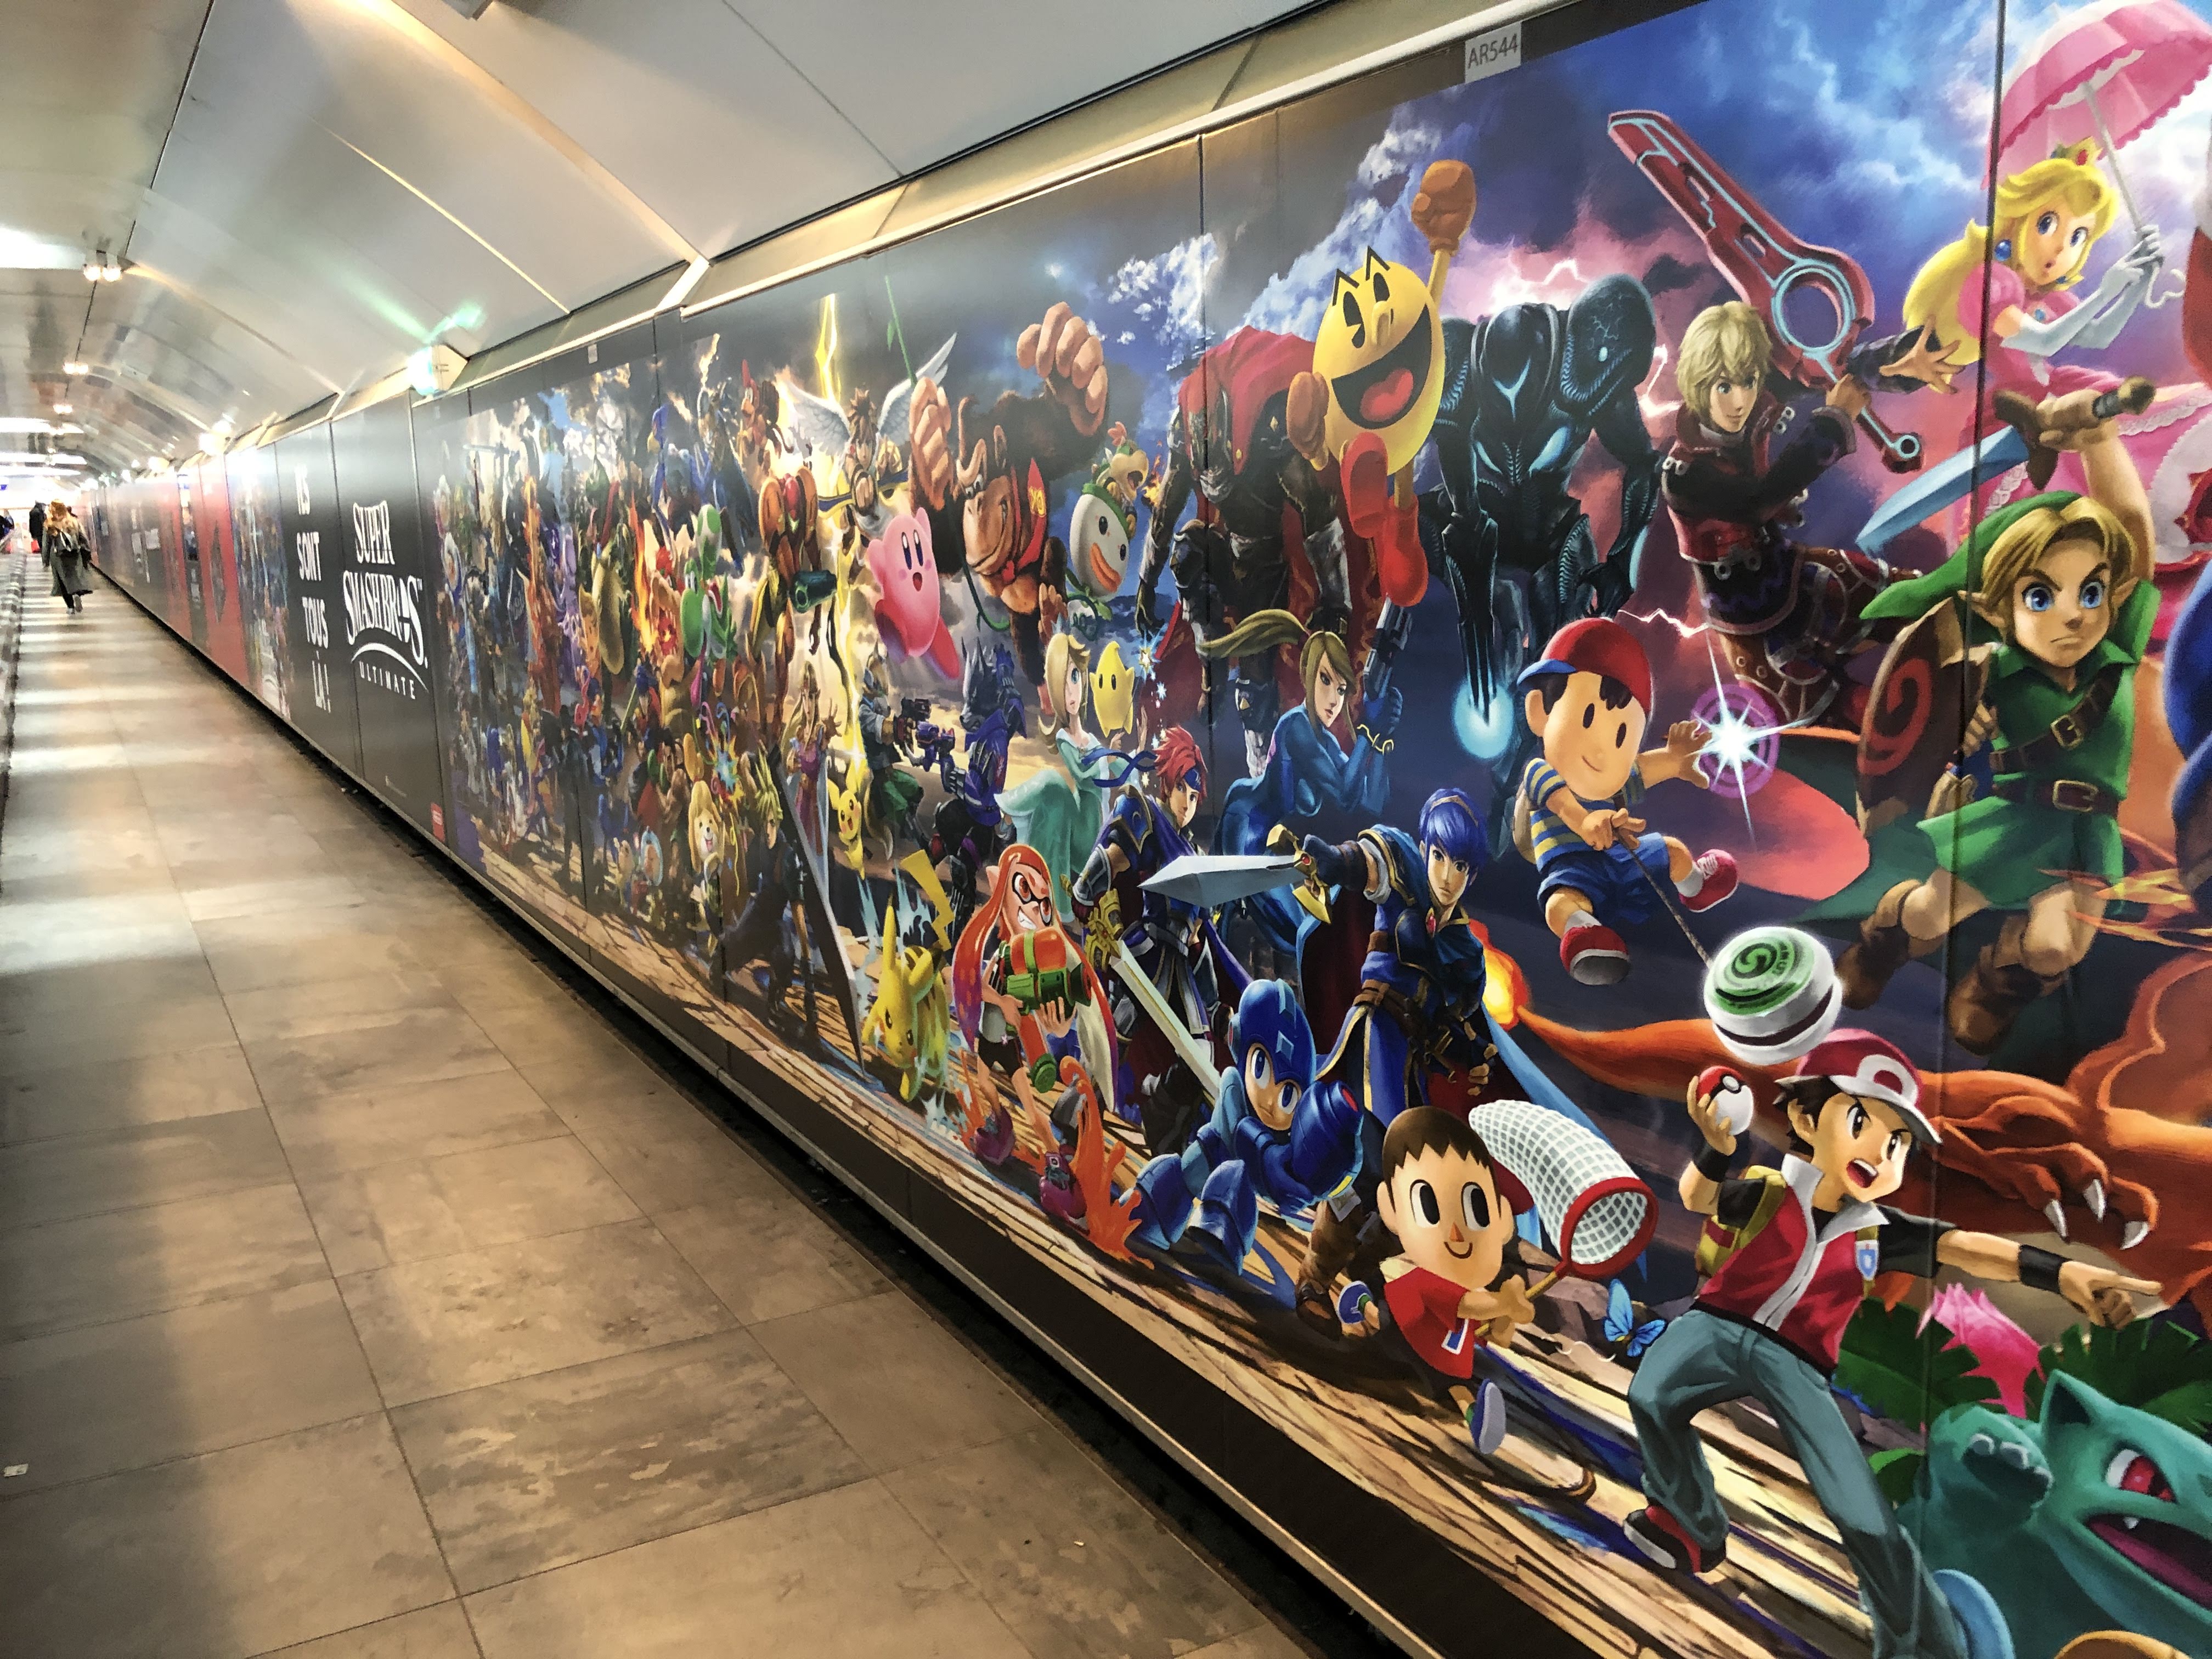 《任天堂明星大亂鬥特別版》即將發售 巴黎地鐵站貼滿宣傳海報